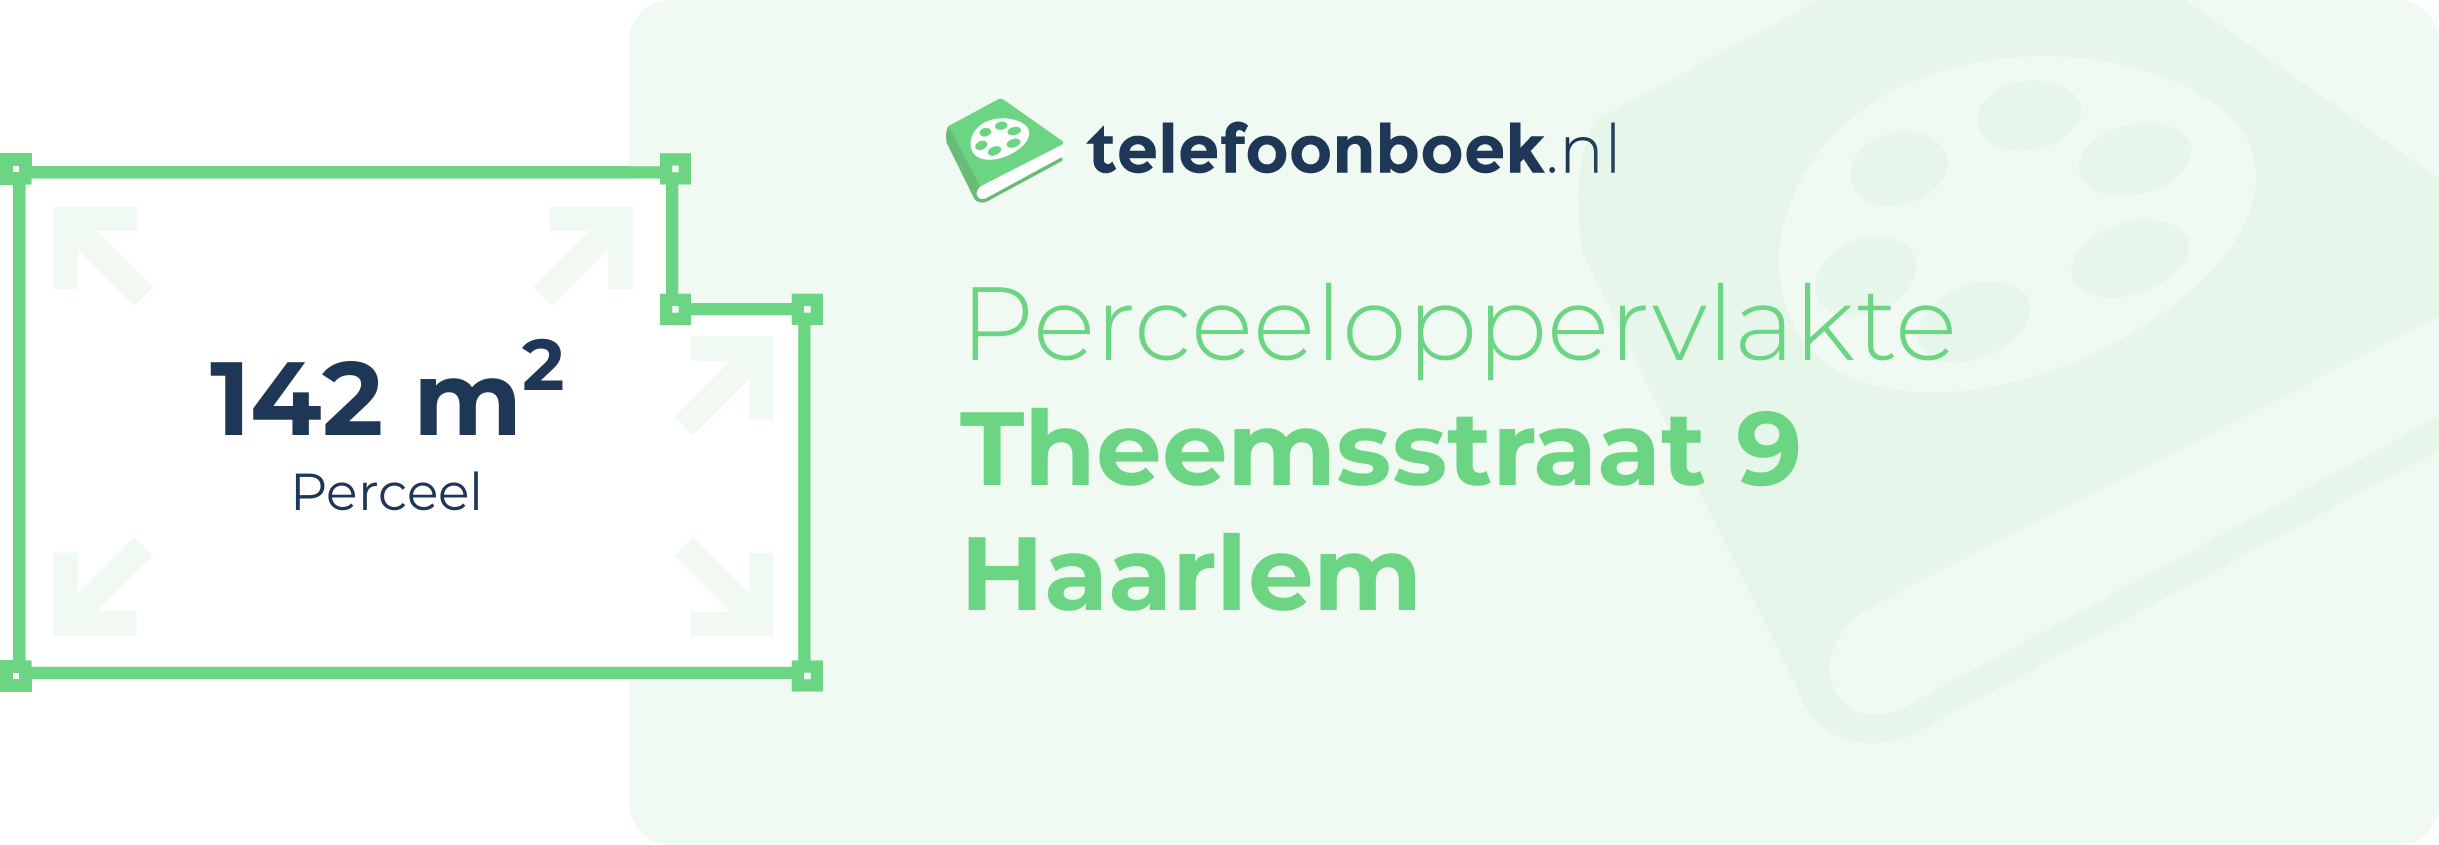 Perceeloppervlakte Theemsstraat 9 Haarlem